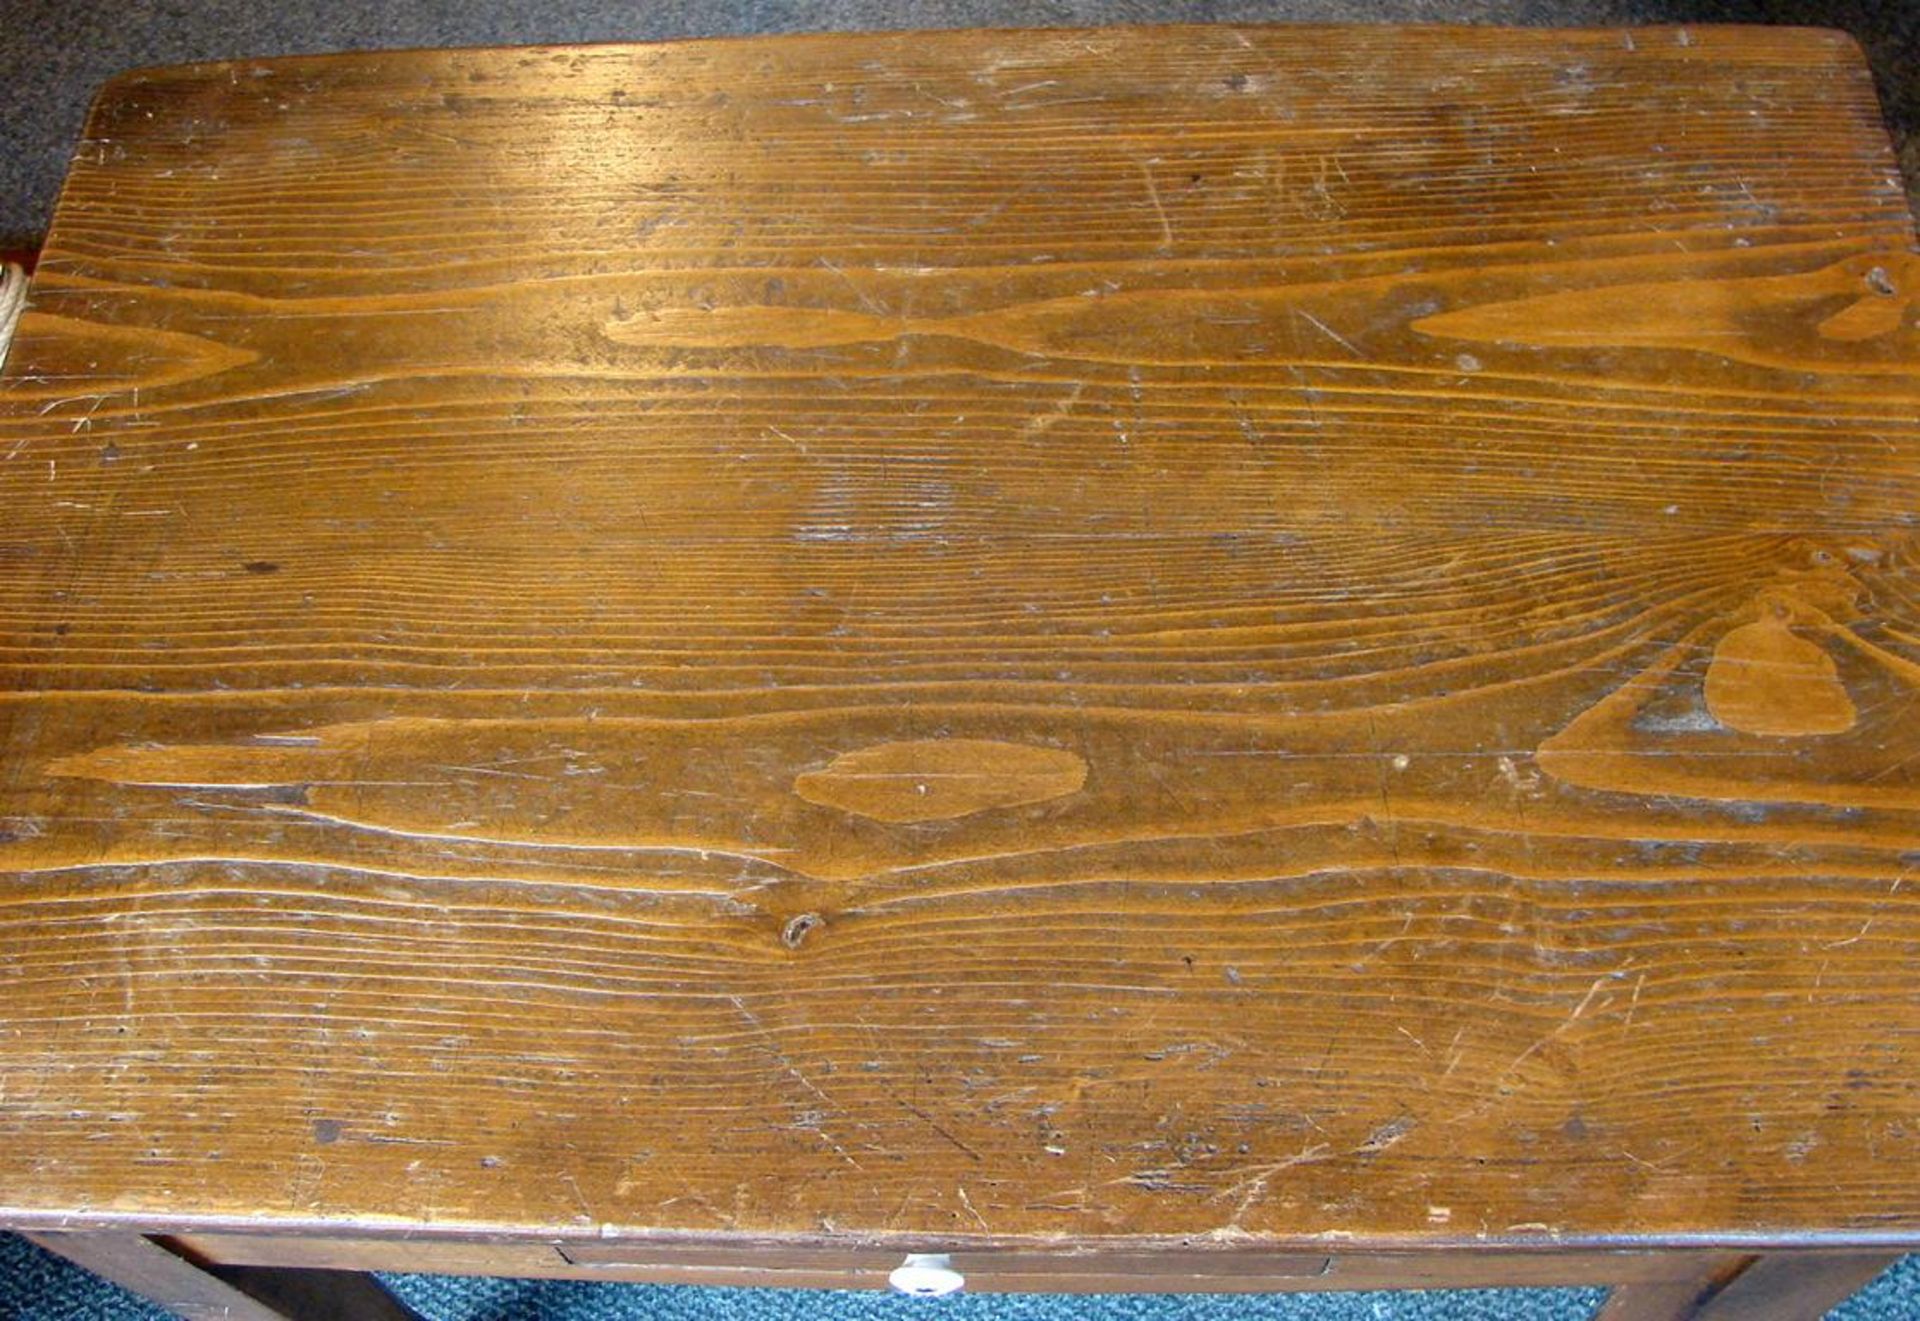 Kleiner Tisch, Eiche, 1 Schublade, H.ca. 62, B. 81, T. 54 cm - Image 2 of 2